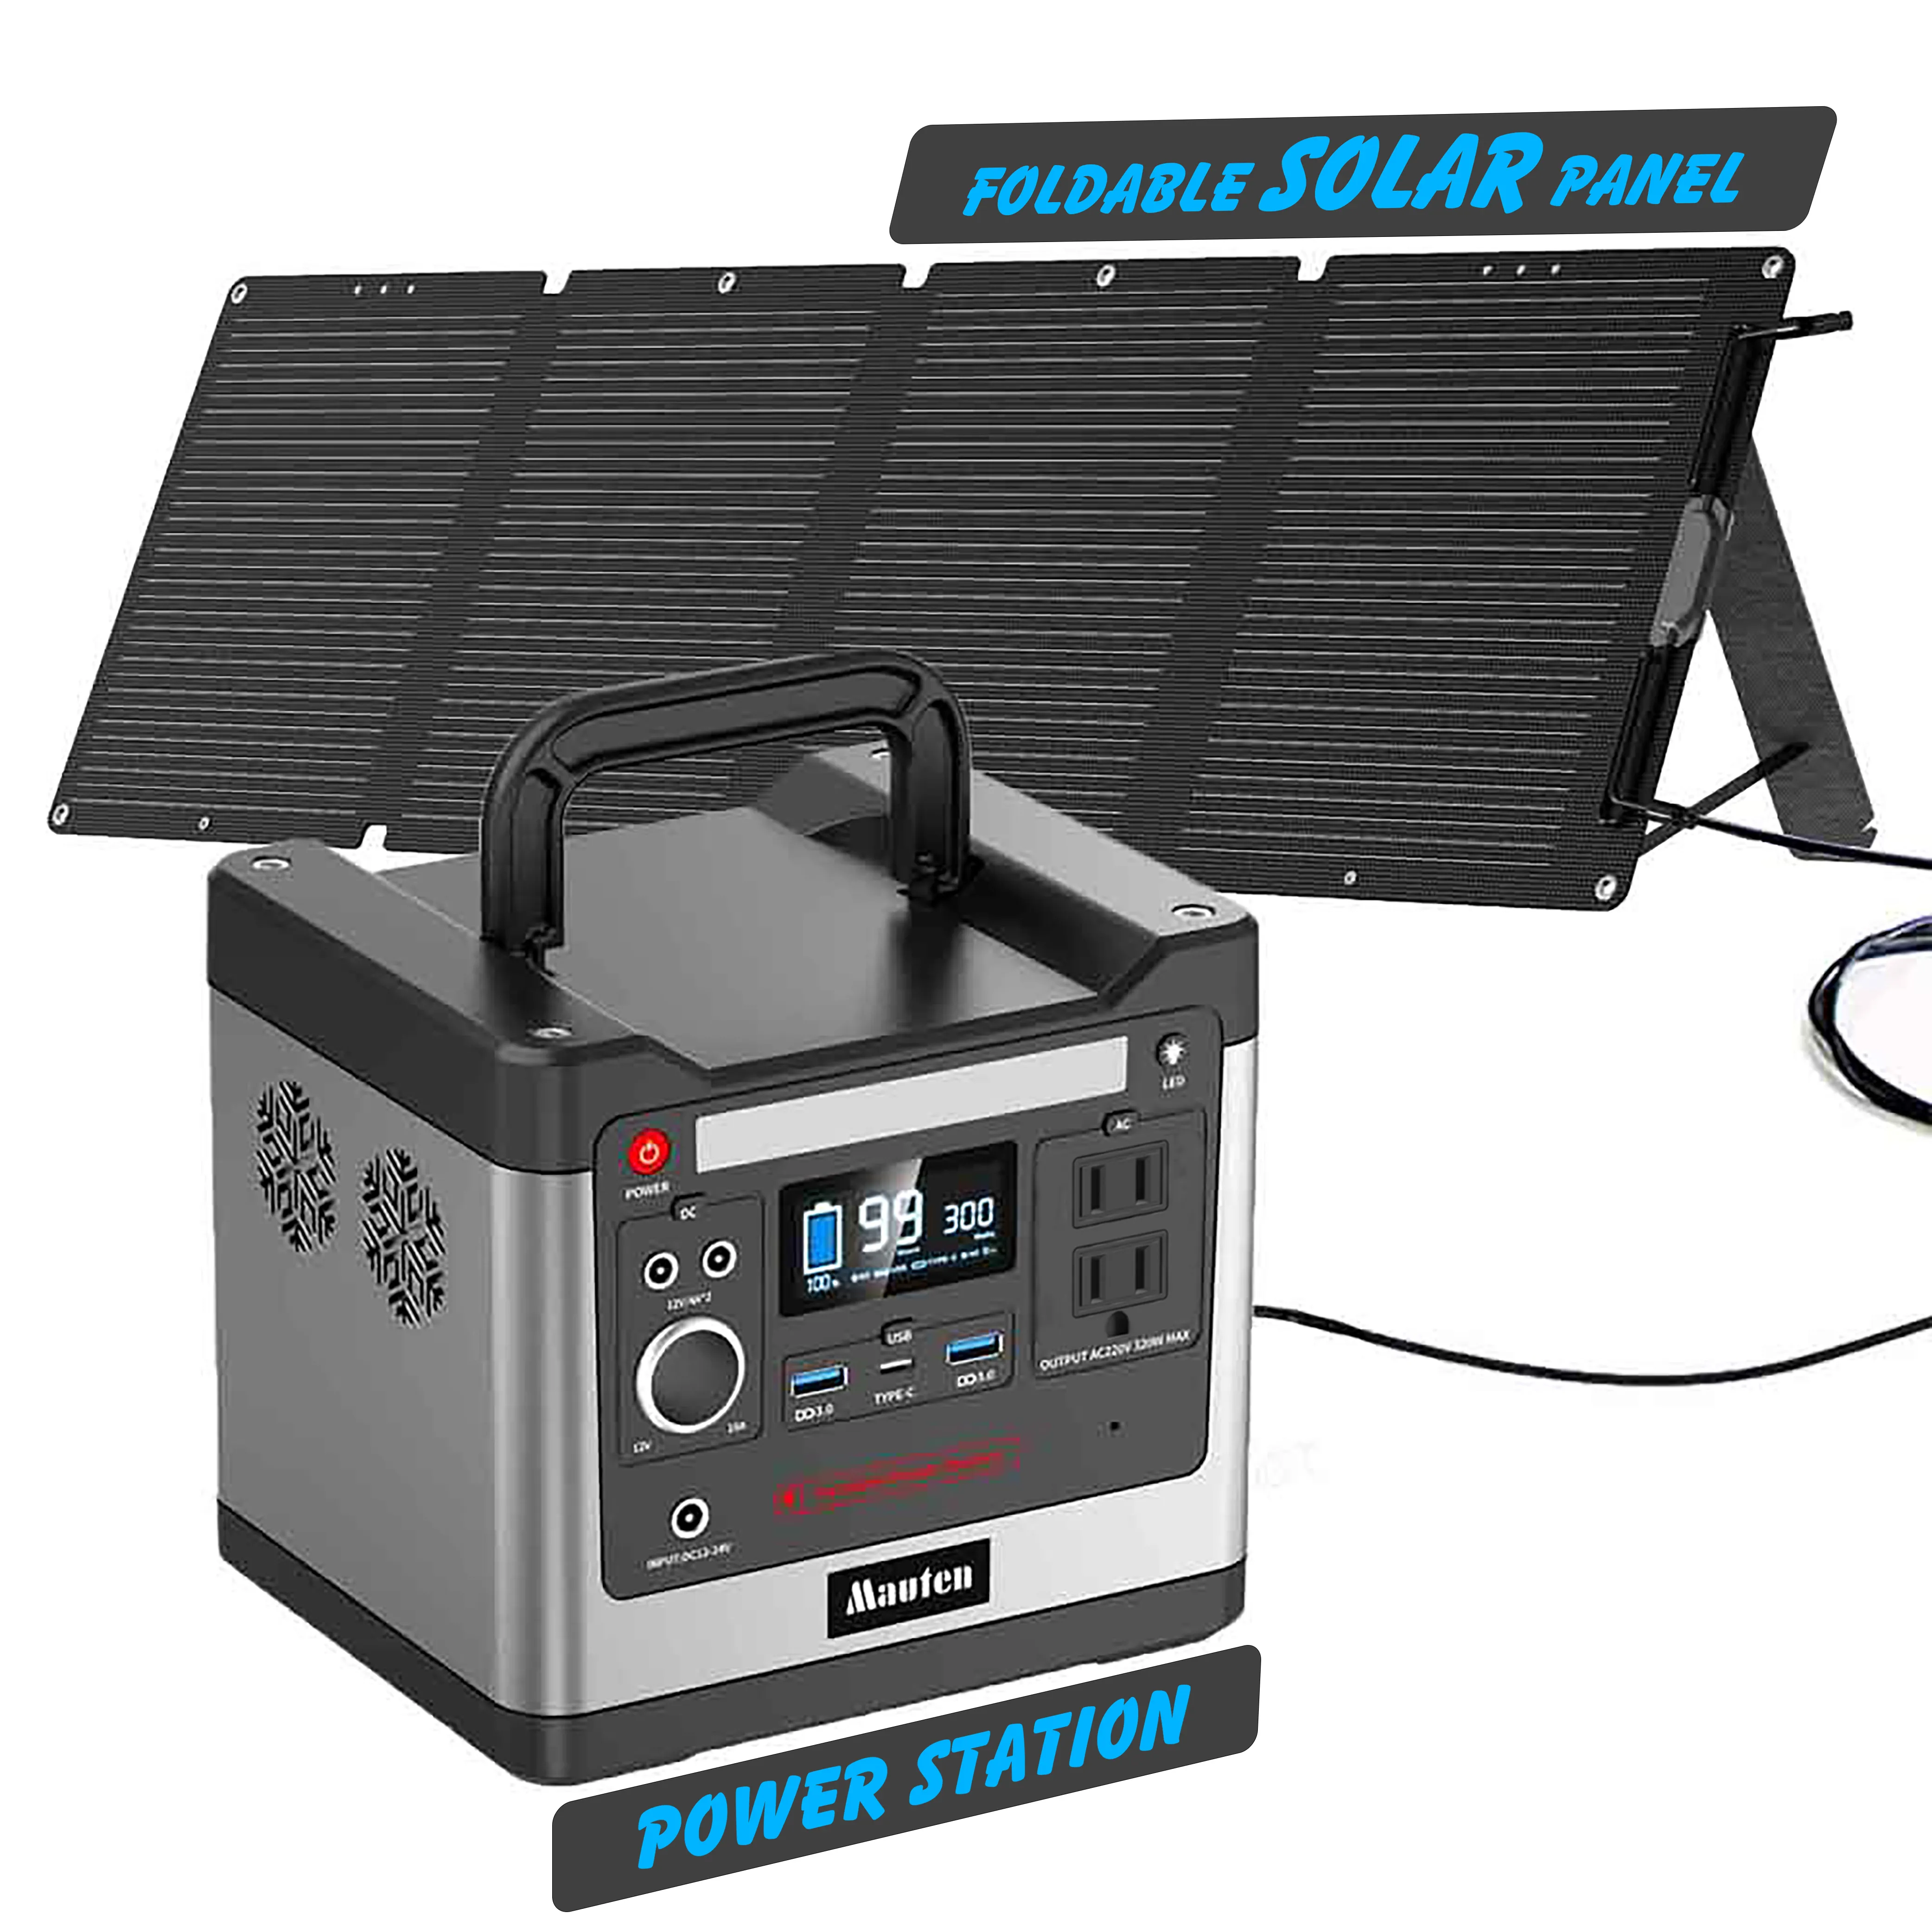 300W 500W 700W Générateur solaire avec panneau solaire USA Ware maison/Station d'alimentation de charge mobile extérieure